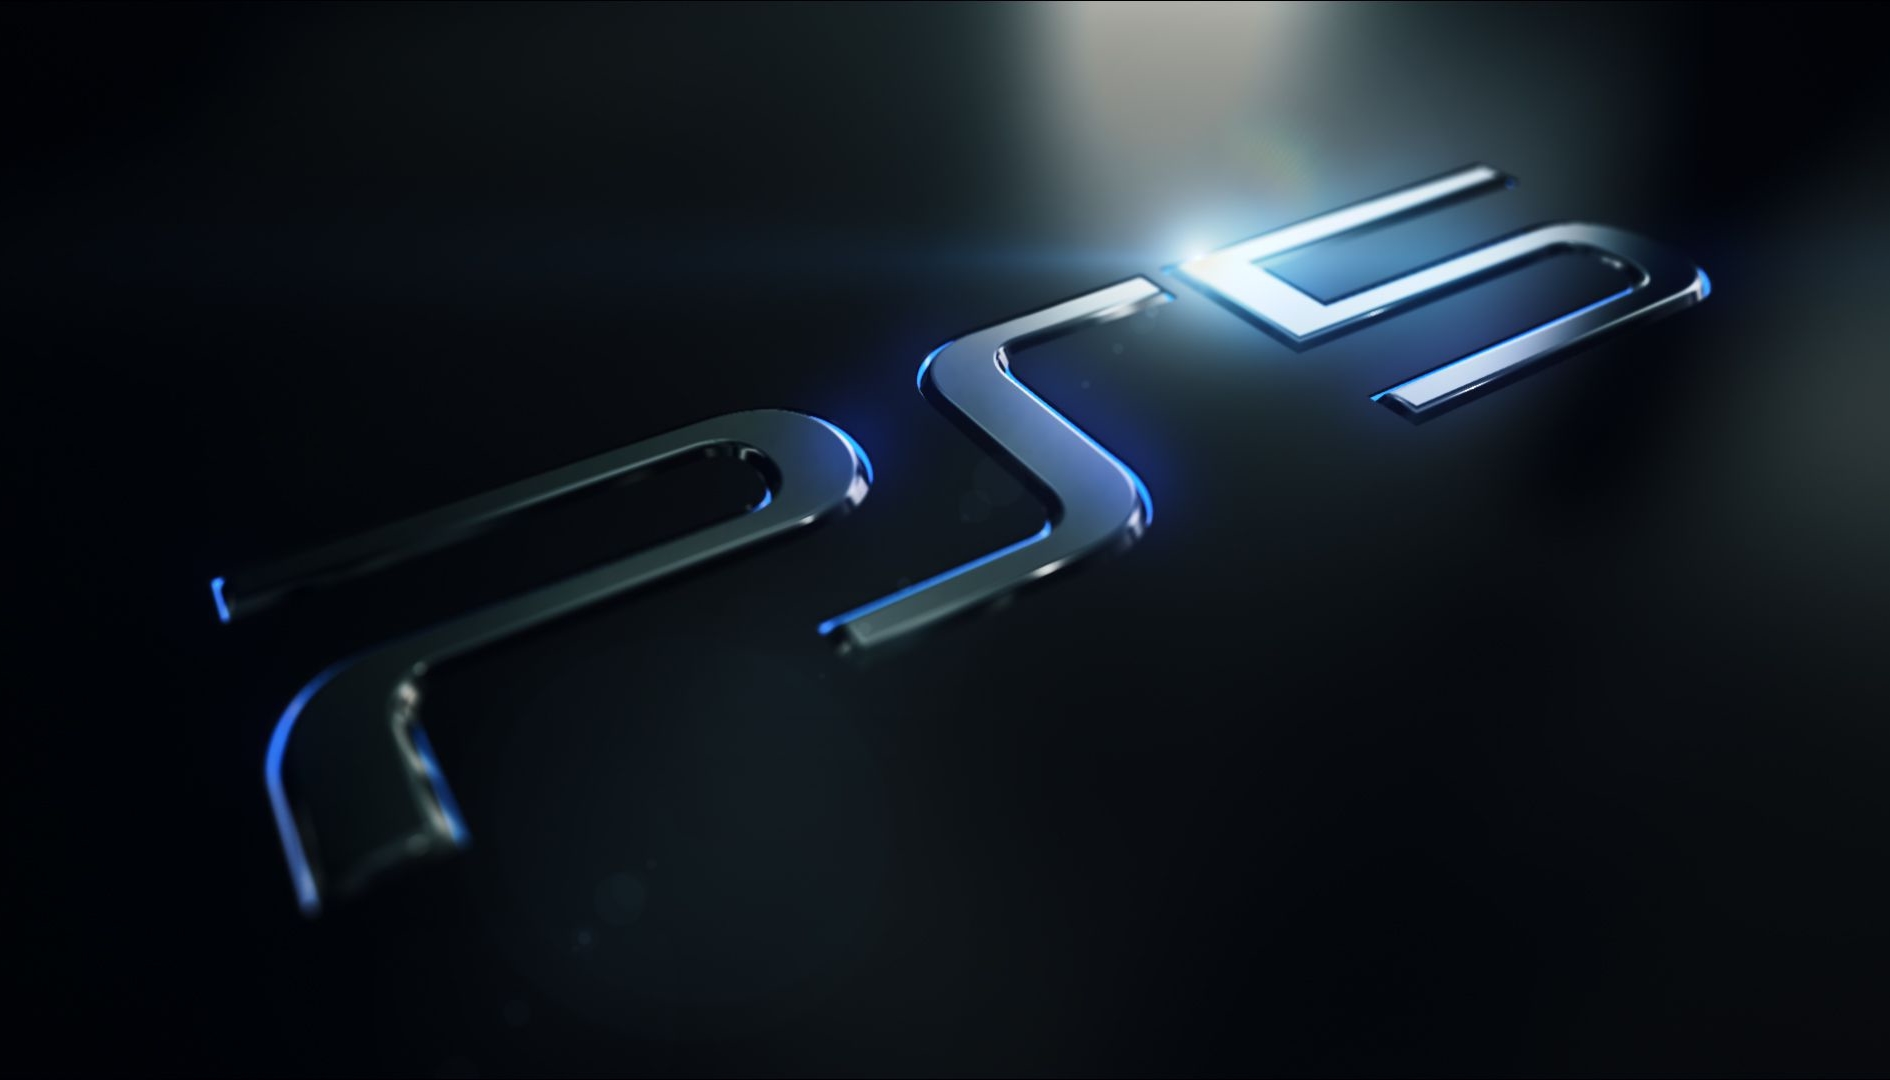 رصد الصفحة الرسمية لجهاز Playstation 5 على الموقع الرسمي لشركة Sony